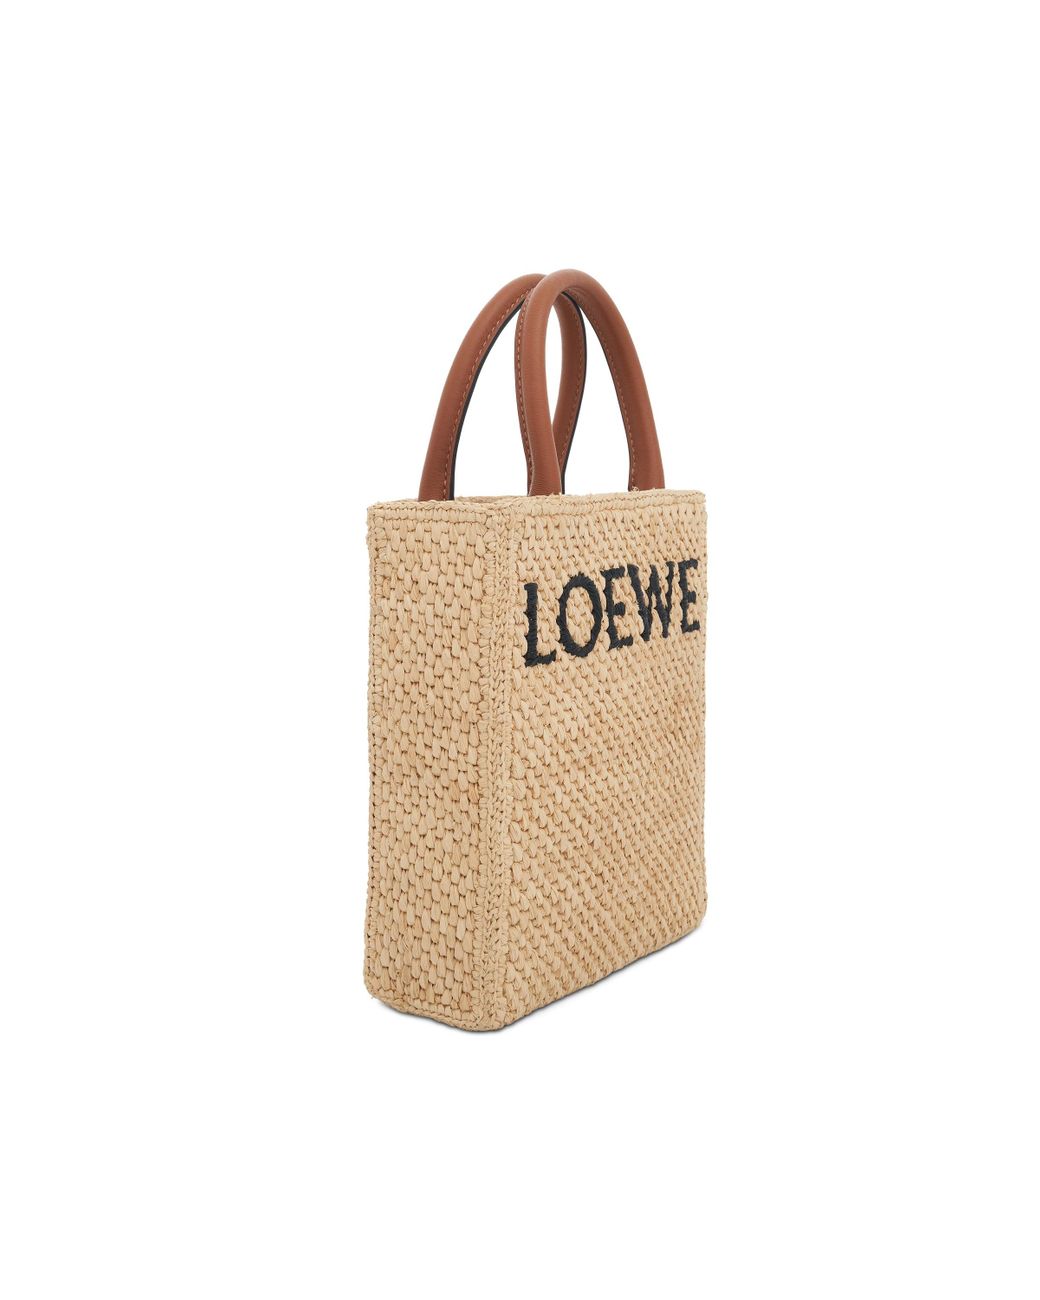 LOEWE Standard A5 Tote Bag In Raffia Natural/Black in Raffia with